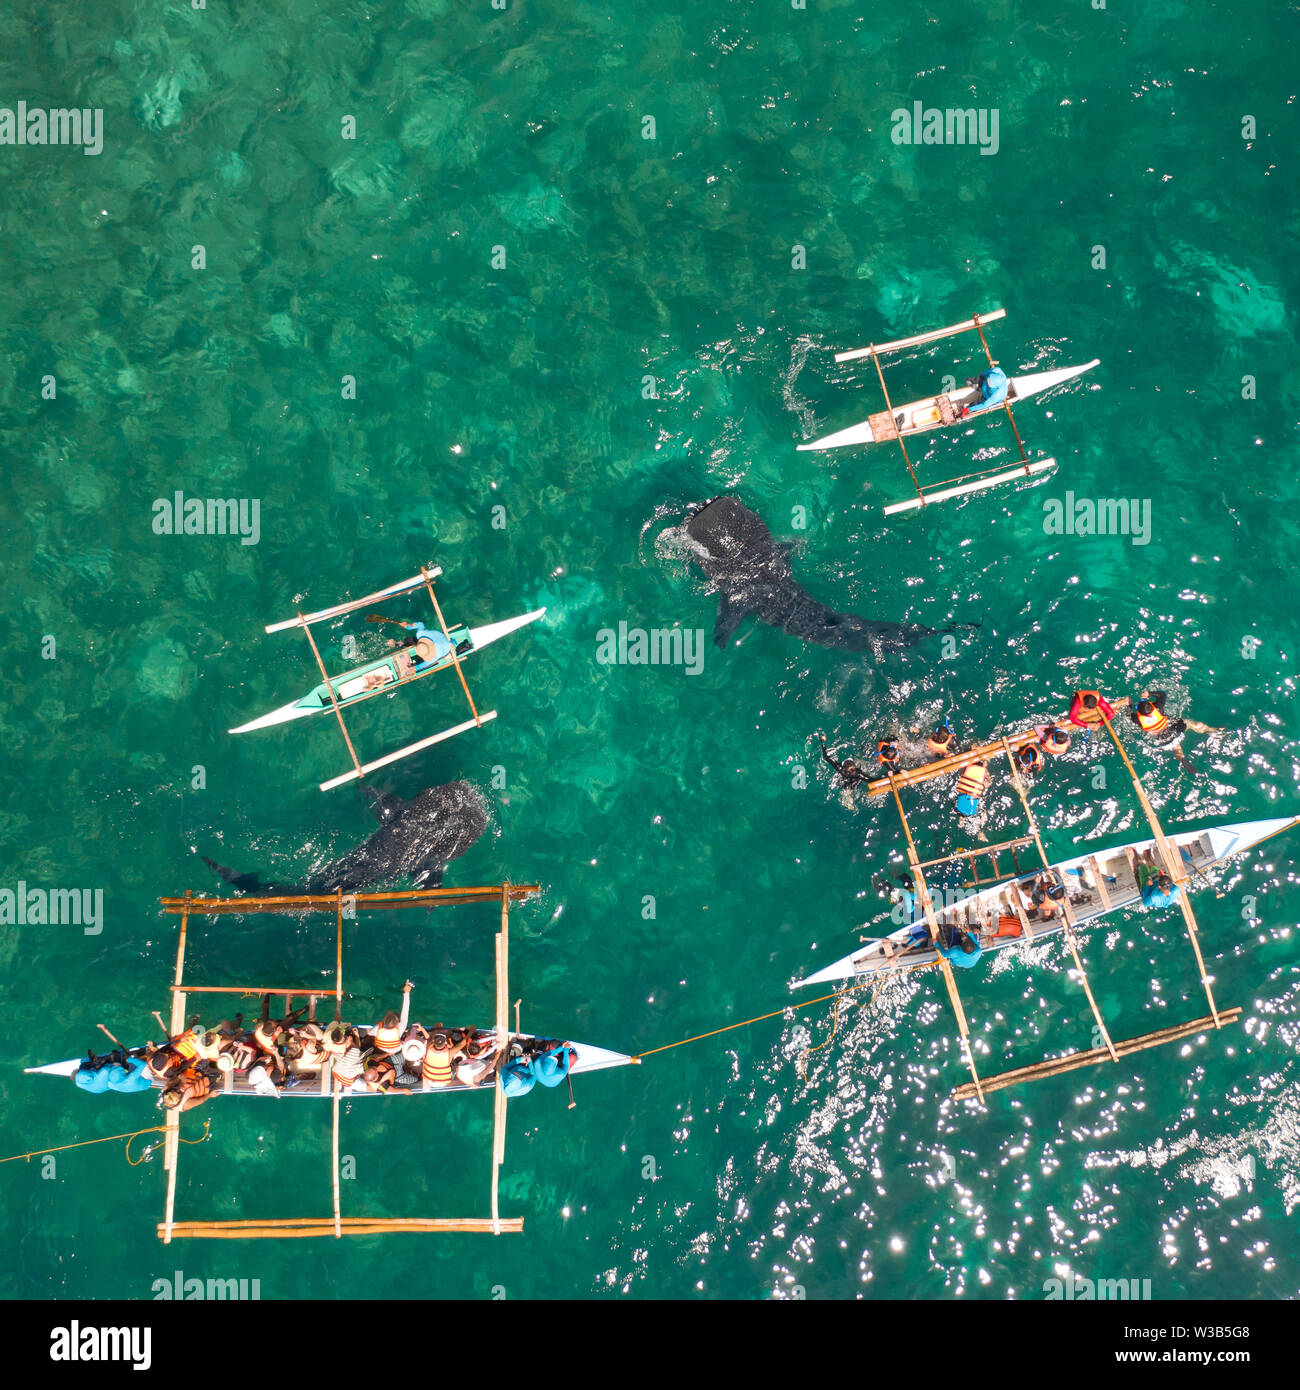 Los turistas están viendo los tiburones ballena en el municipio de Oslob, Filipinas, vista aérea. Concepto de vacaciones de verano y viajes. Foto de stock